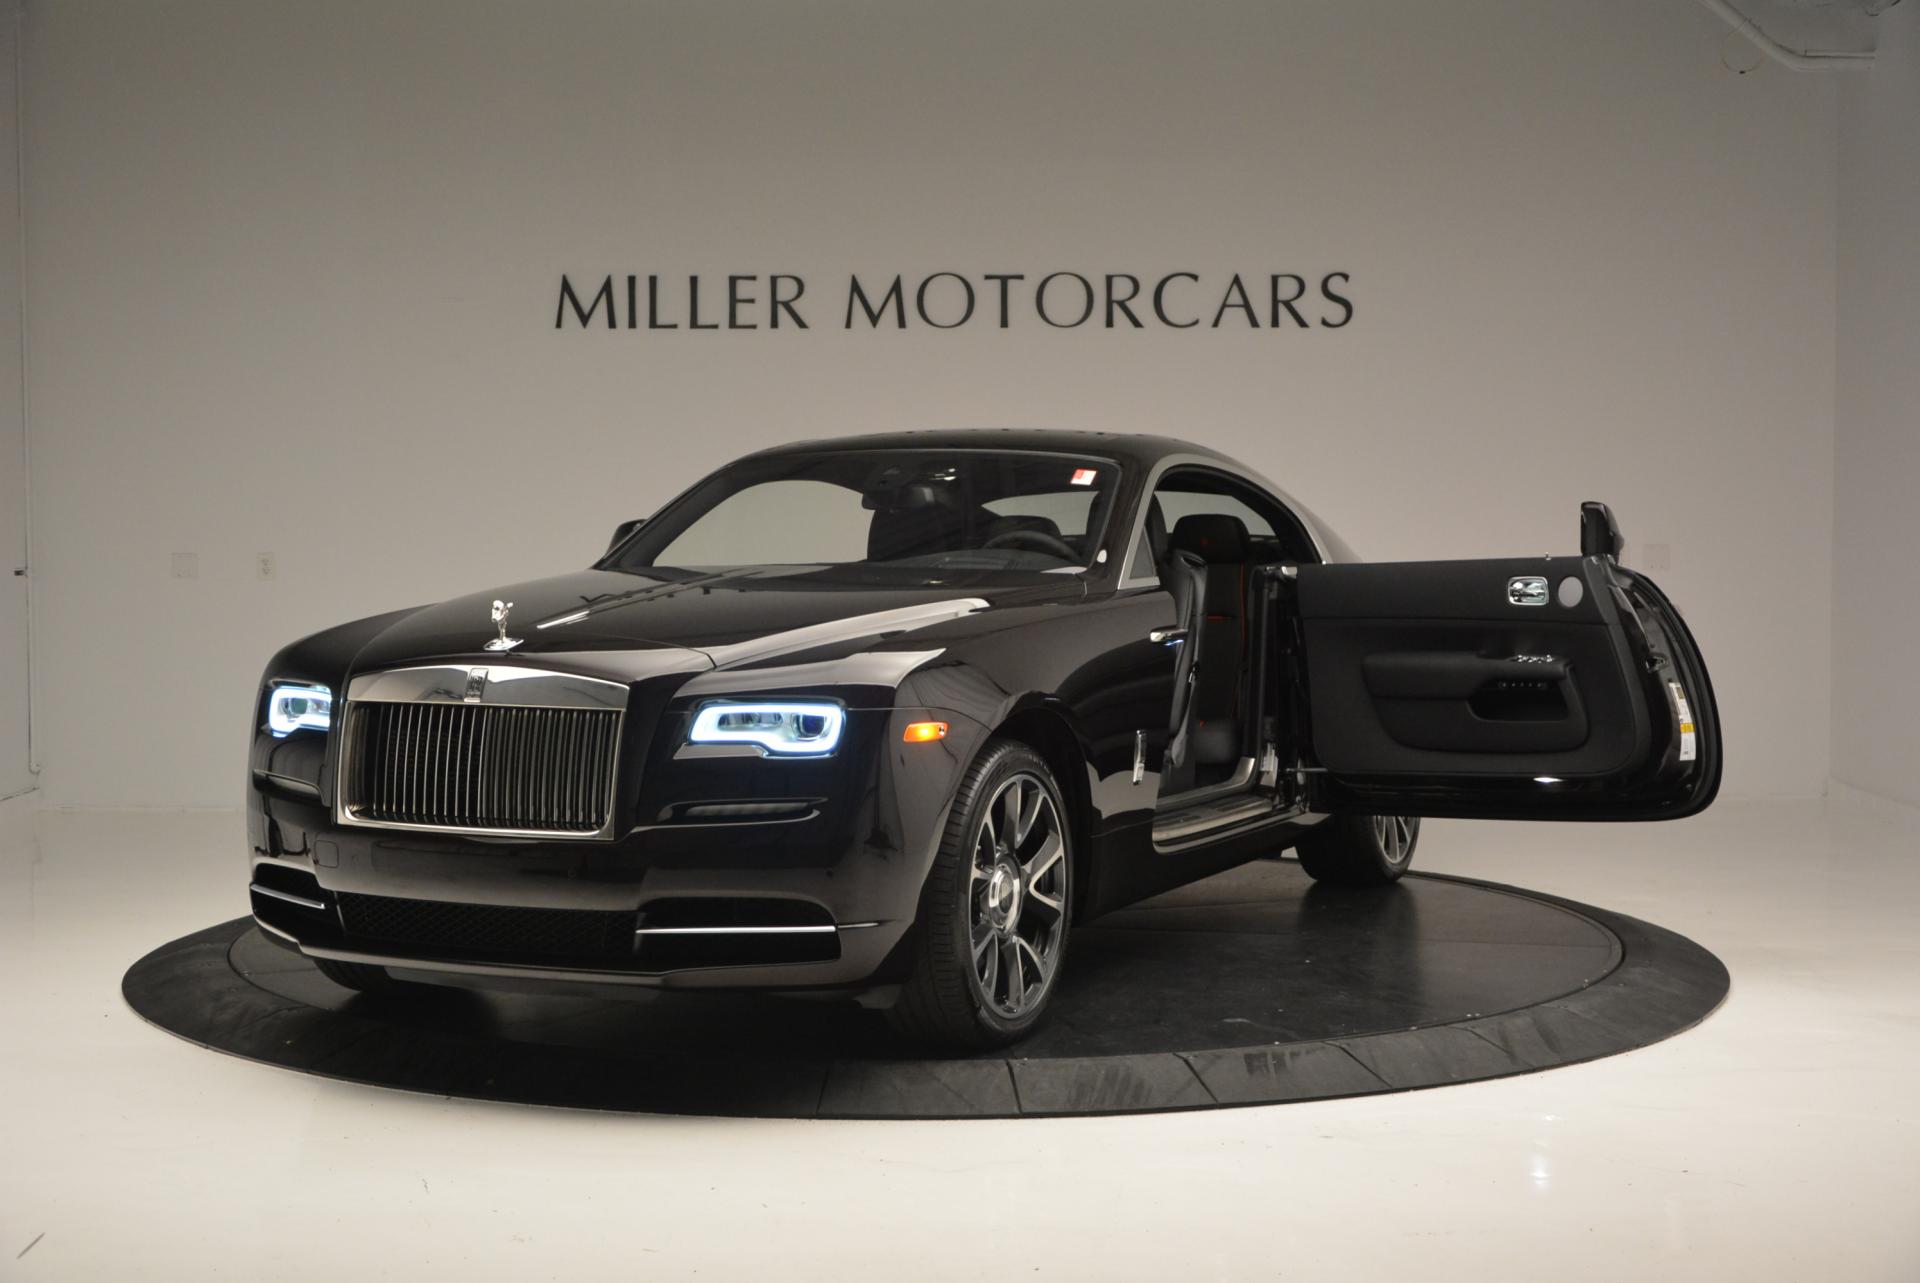 2017 Rolls Royce Wraith